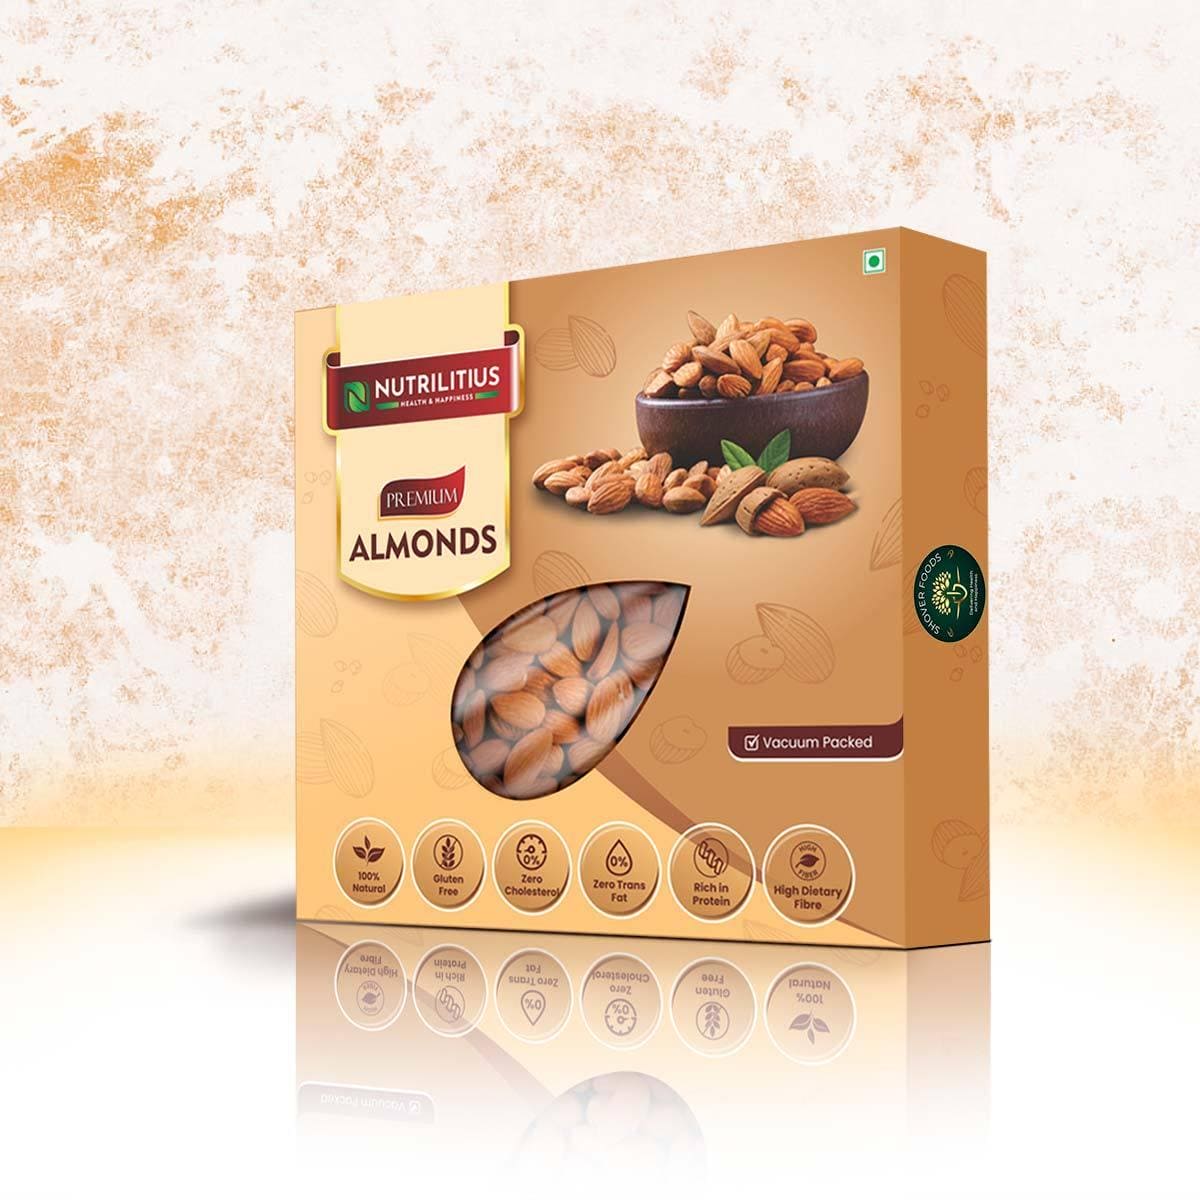 Nutrilitius Premium Almonds - Nutrilitius